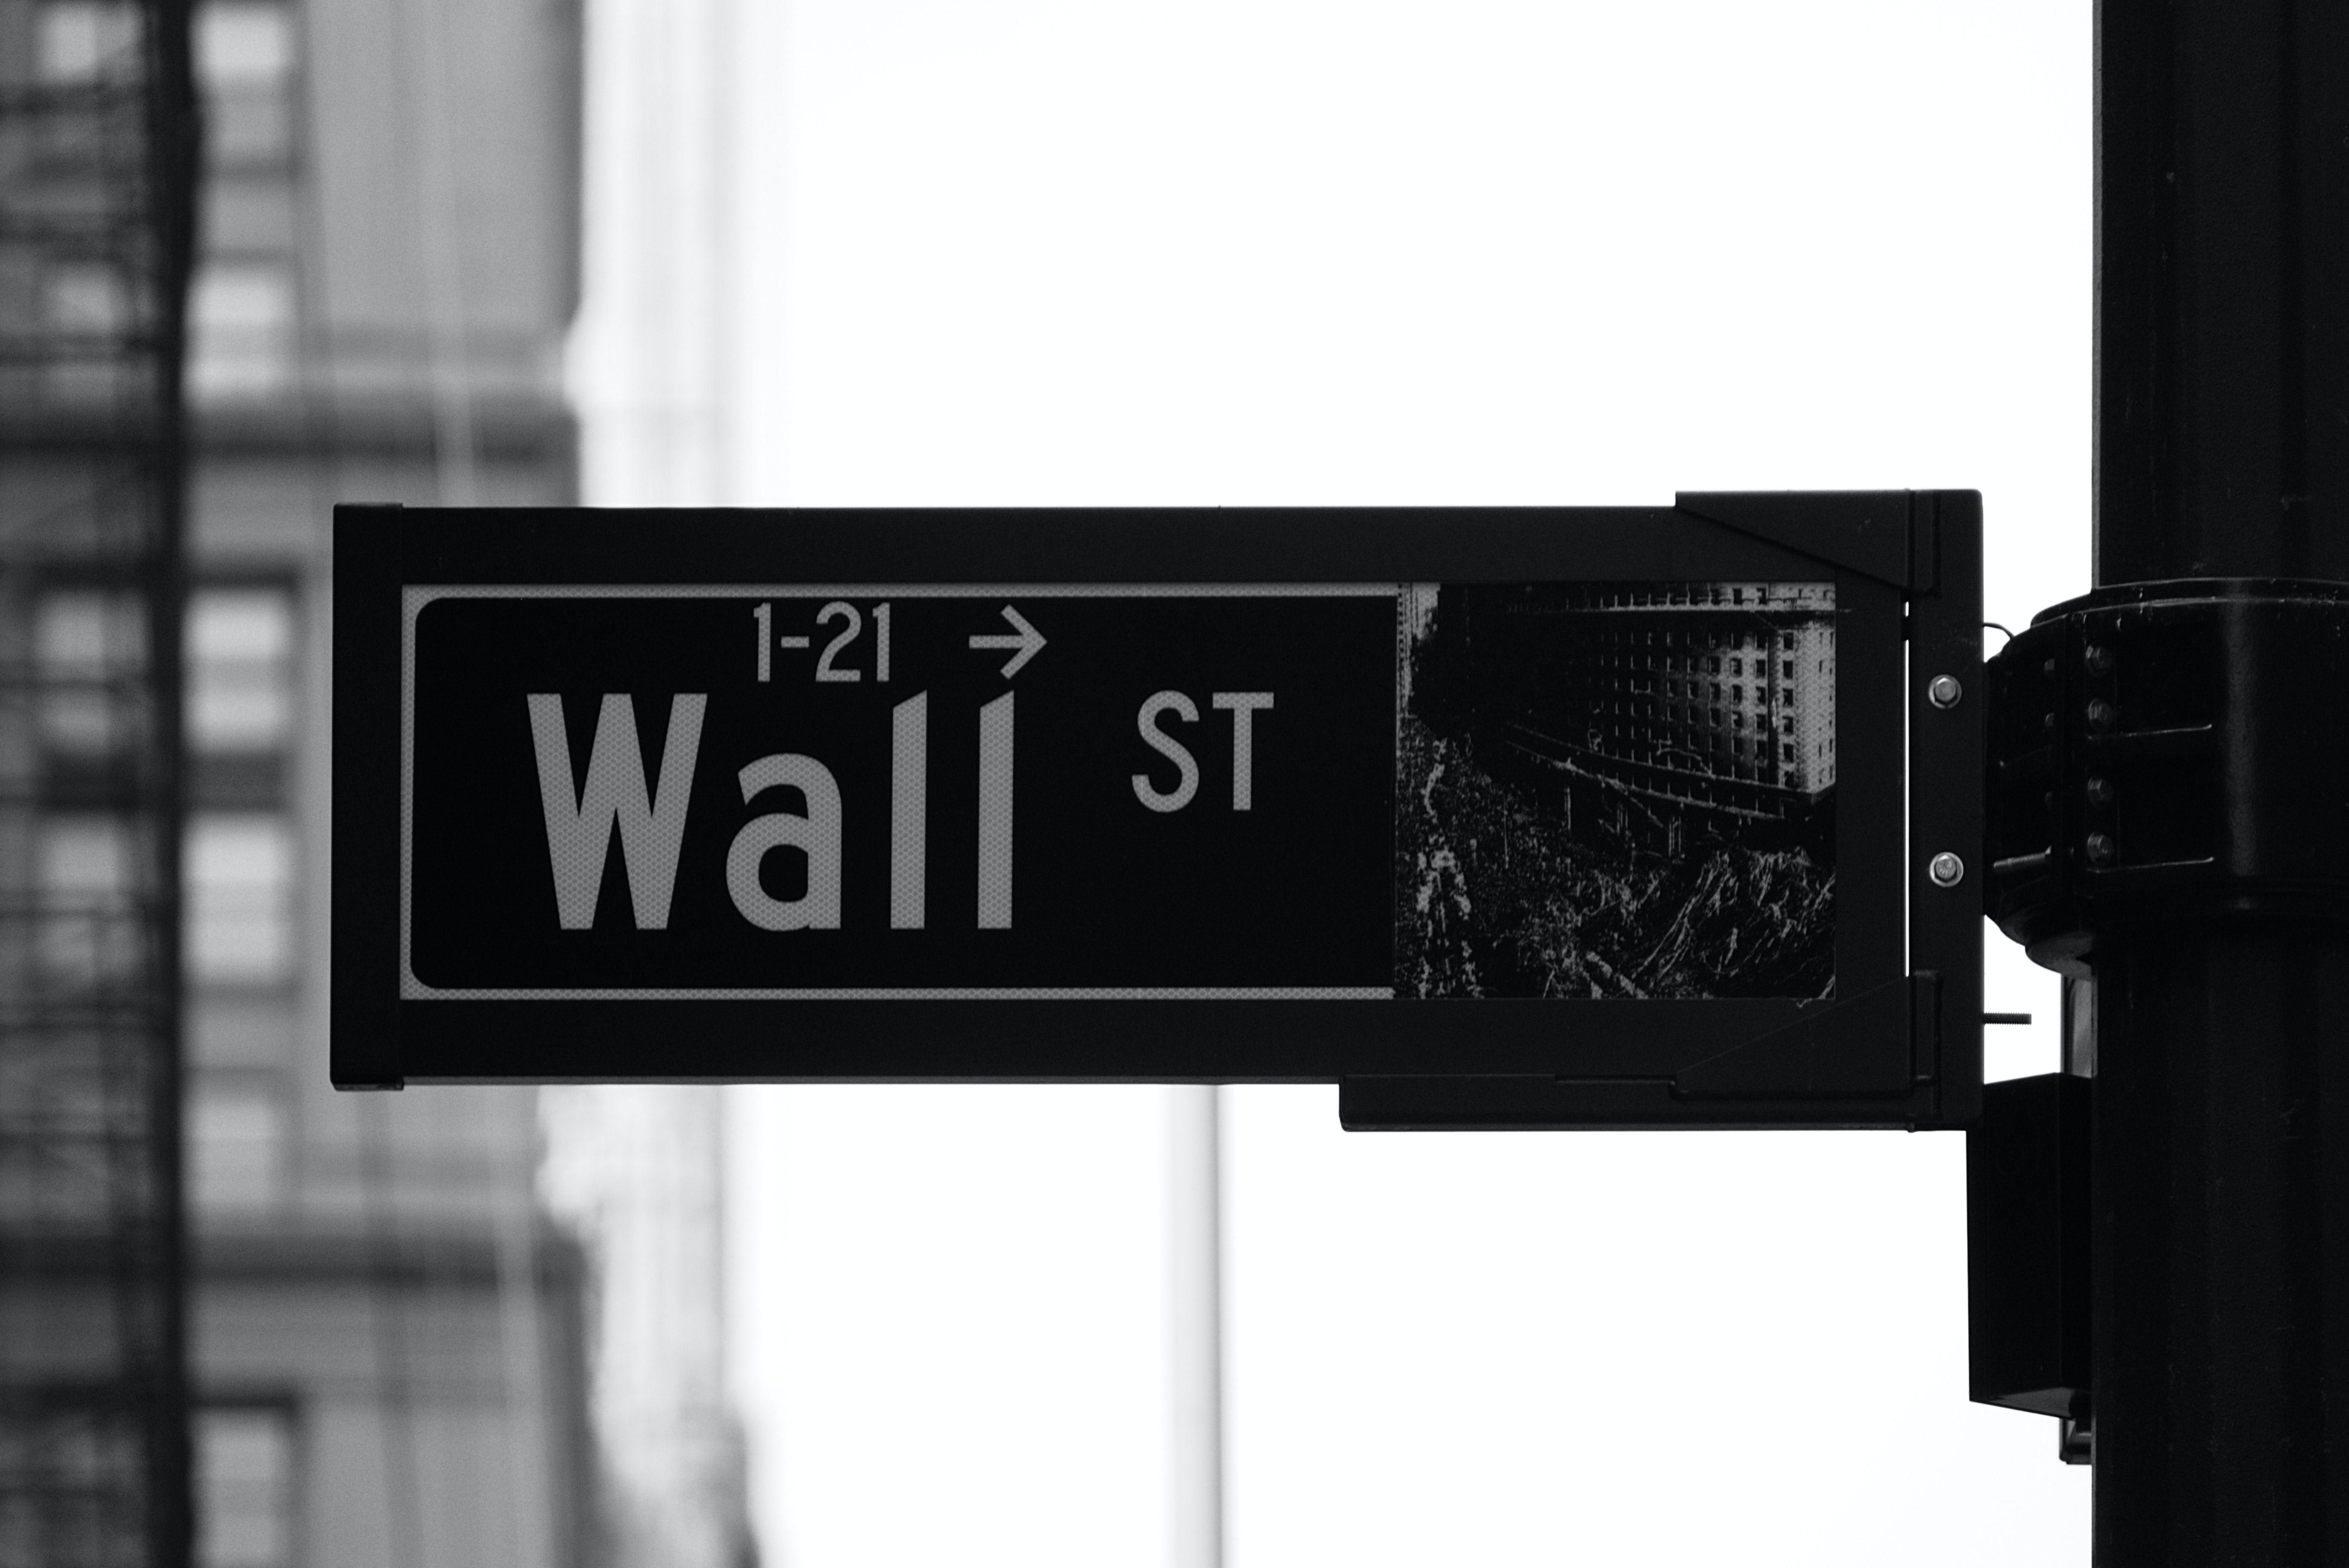 Az amerikai értéktőzsdének helyet adó Wall Street utcanév táblája közelről